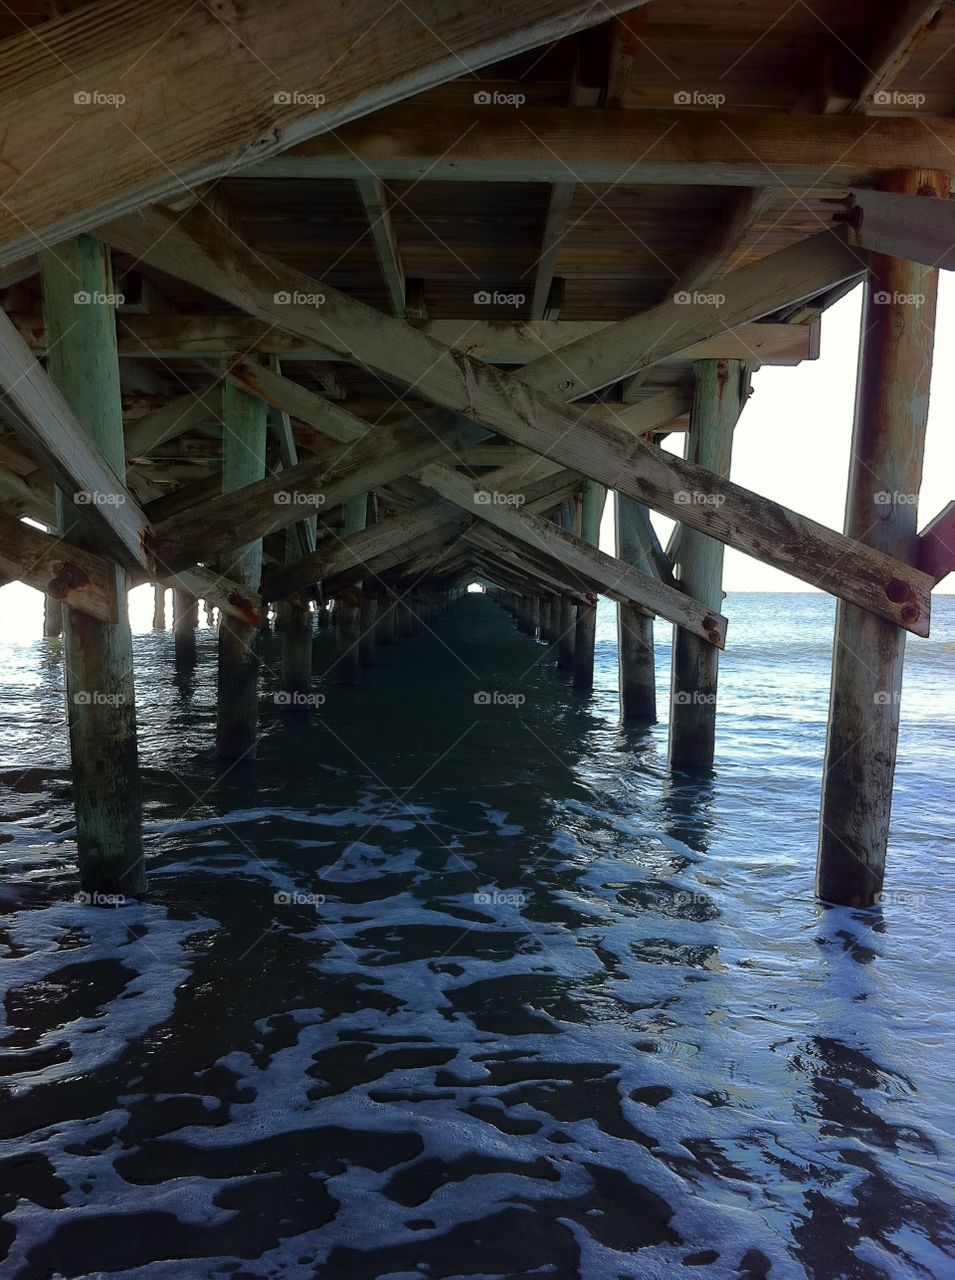 Under the pier in Myrtle Beach, SC